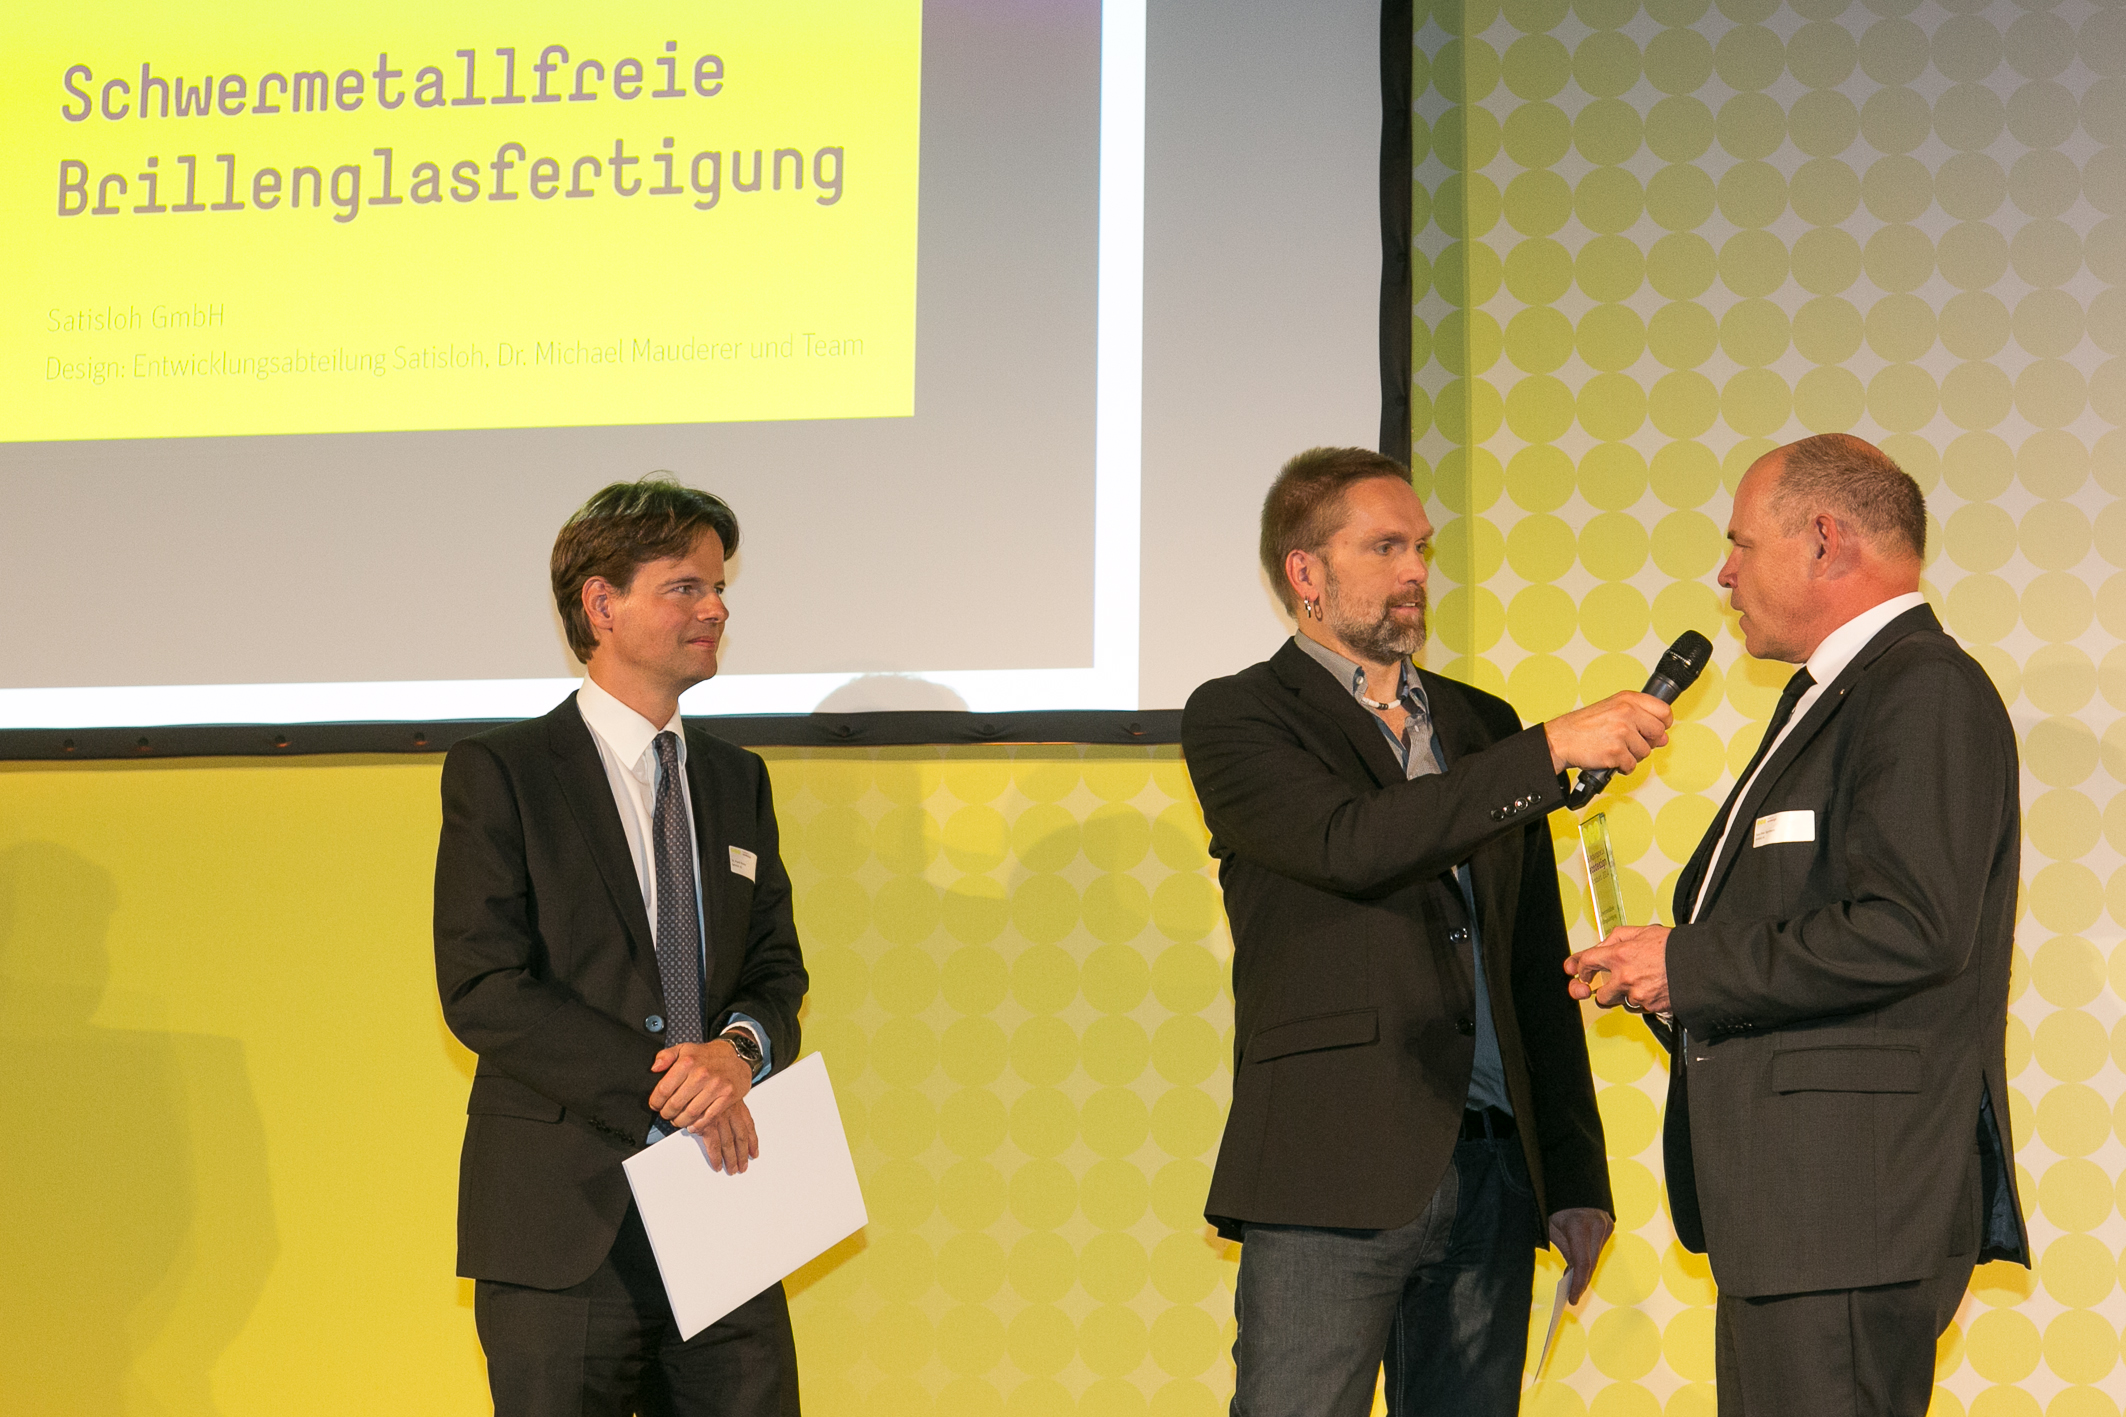 Bundespreis Ecodesign 2014 Moderator Tom Böttcher im Gespräch mit den Preisträgern der Satisloh GmbH